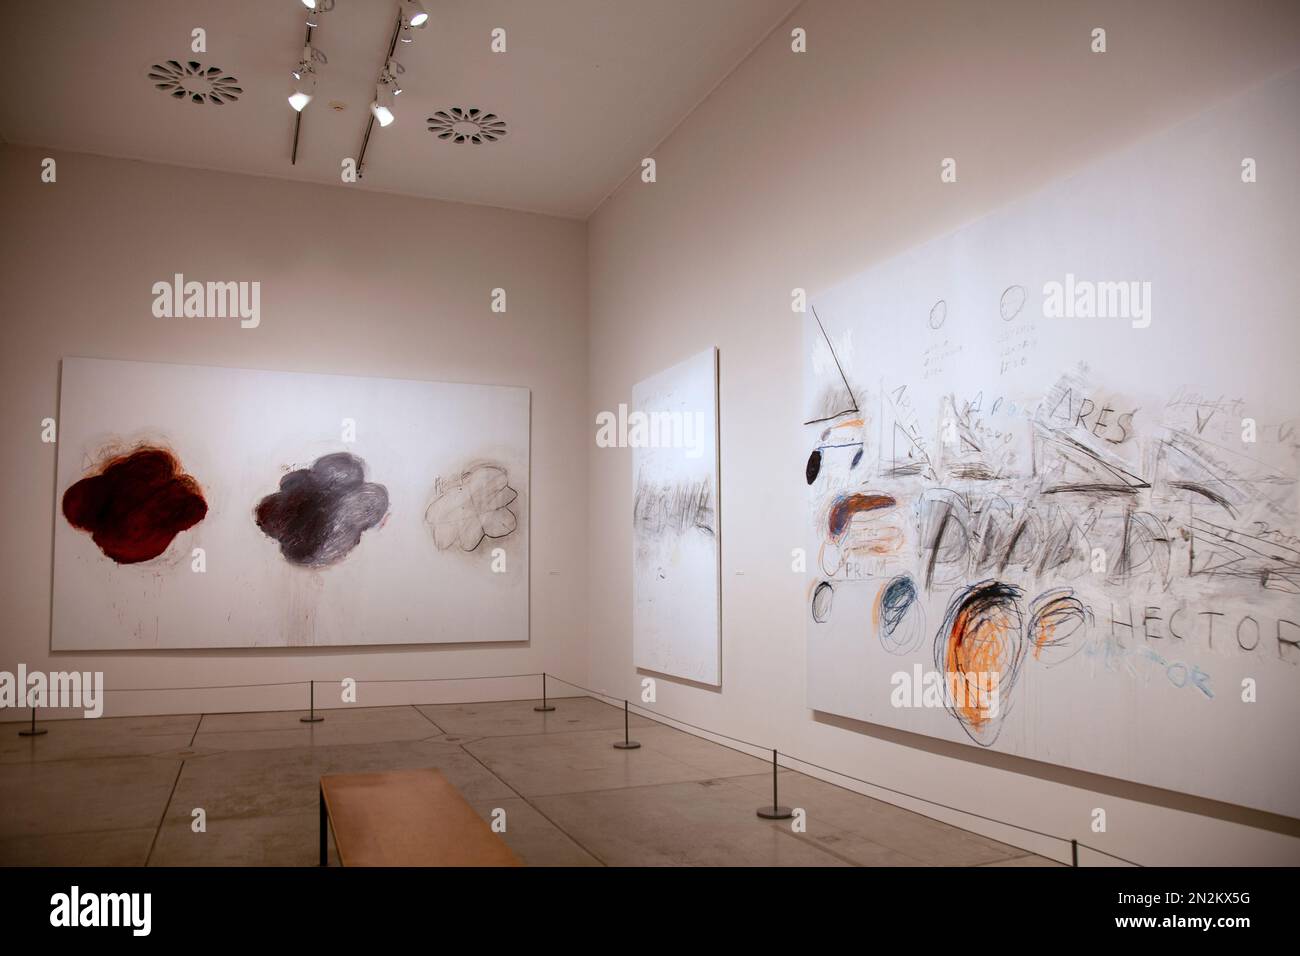 Musée d'art de Philadelphie - salle de galerie Cy Twombly 'Fifty Days at Iliam' - à Philadelphie, Etats-Unis Banque D'Images